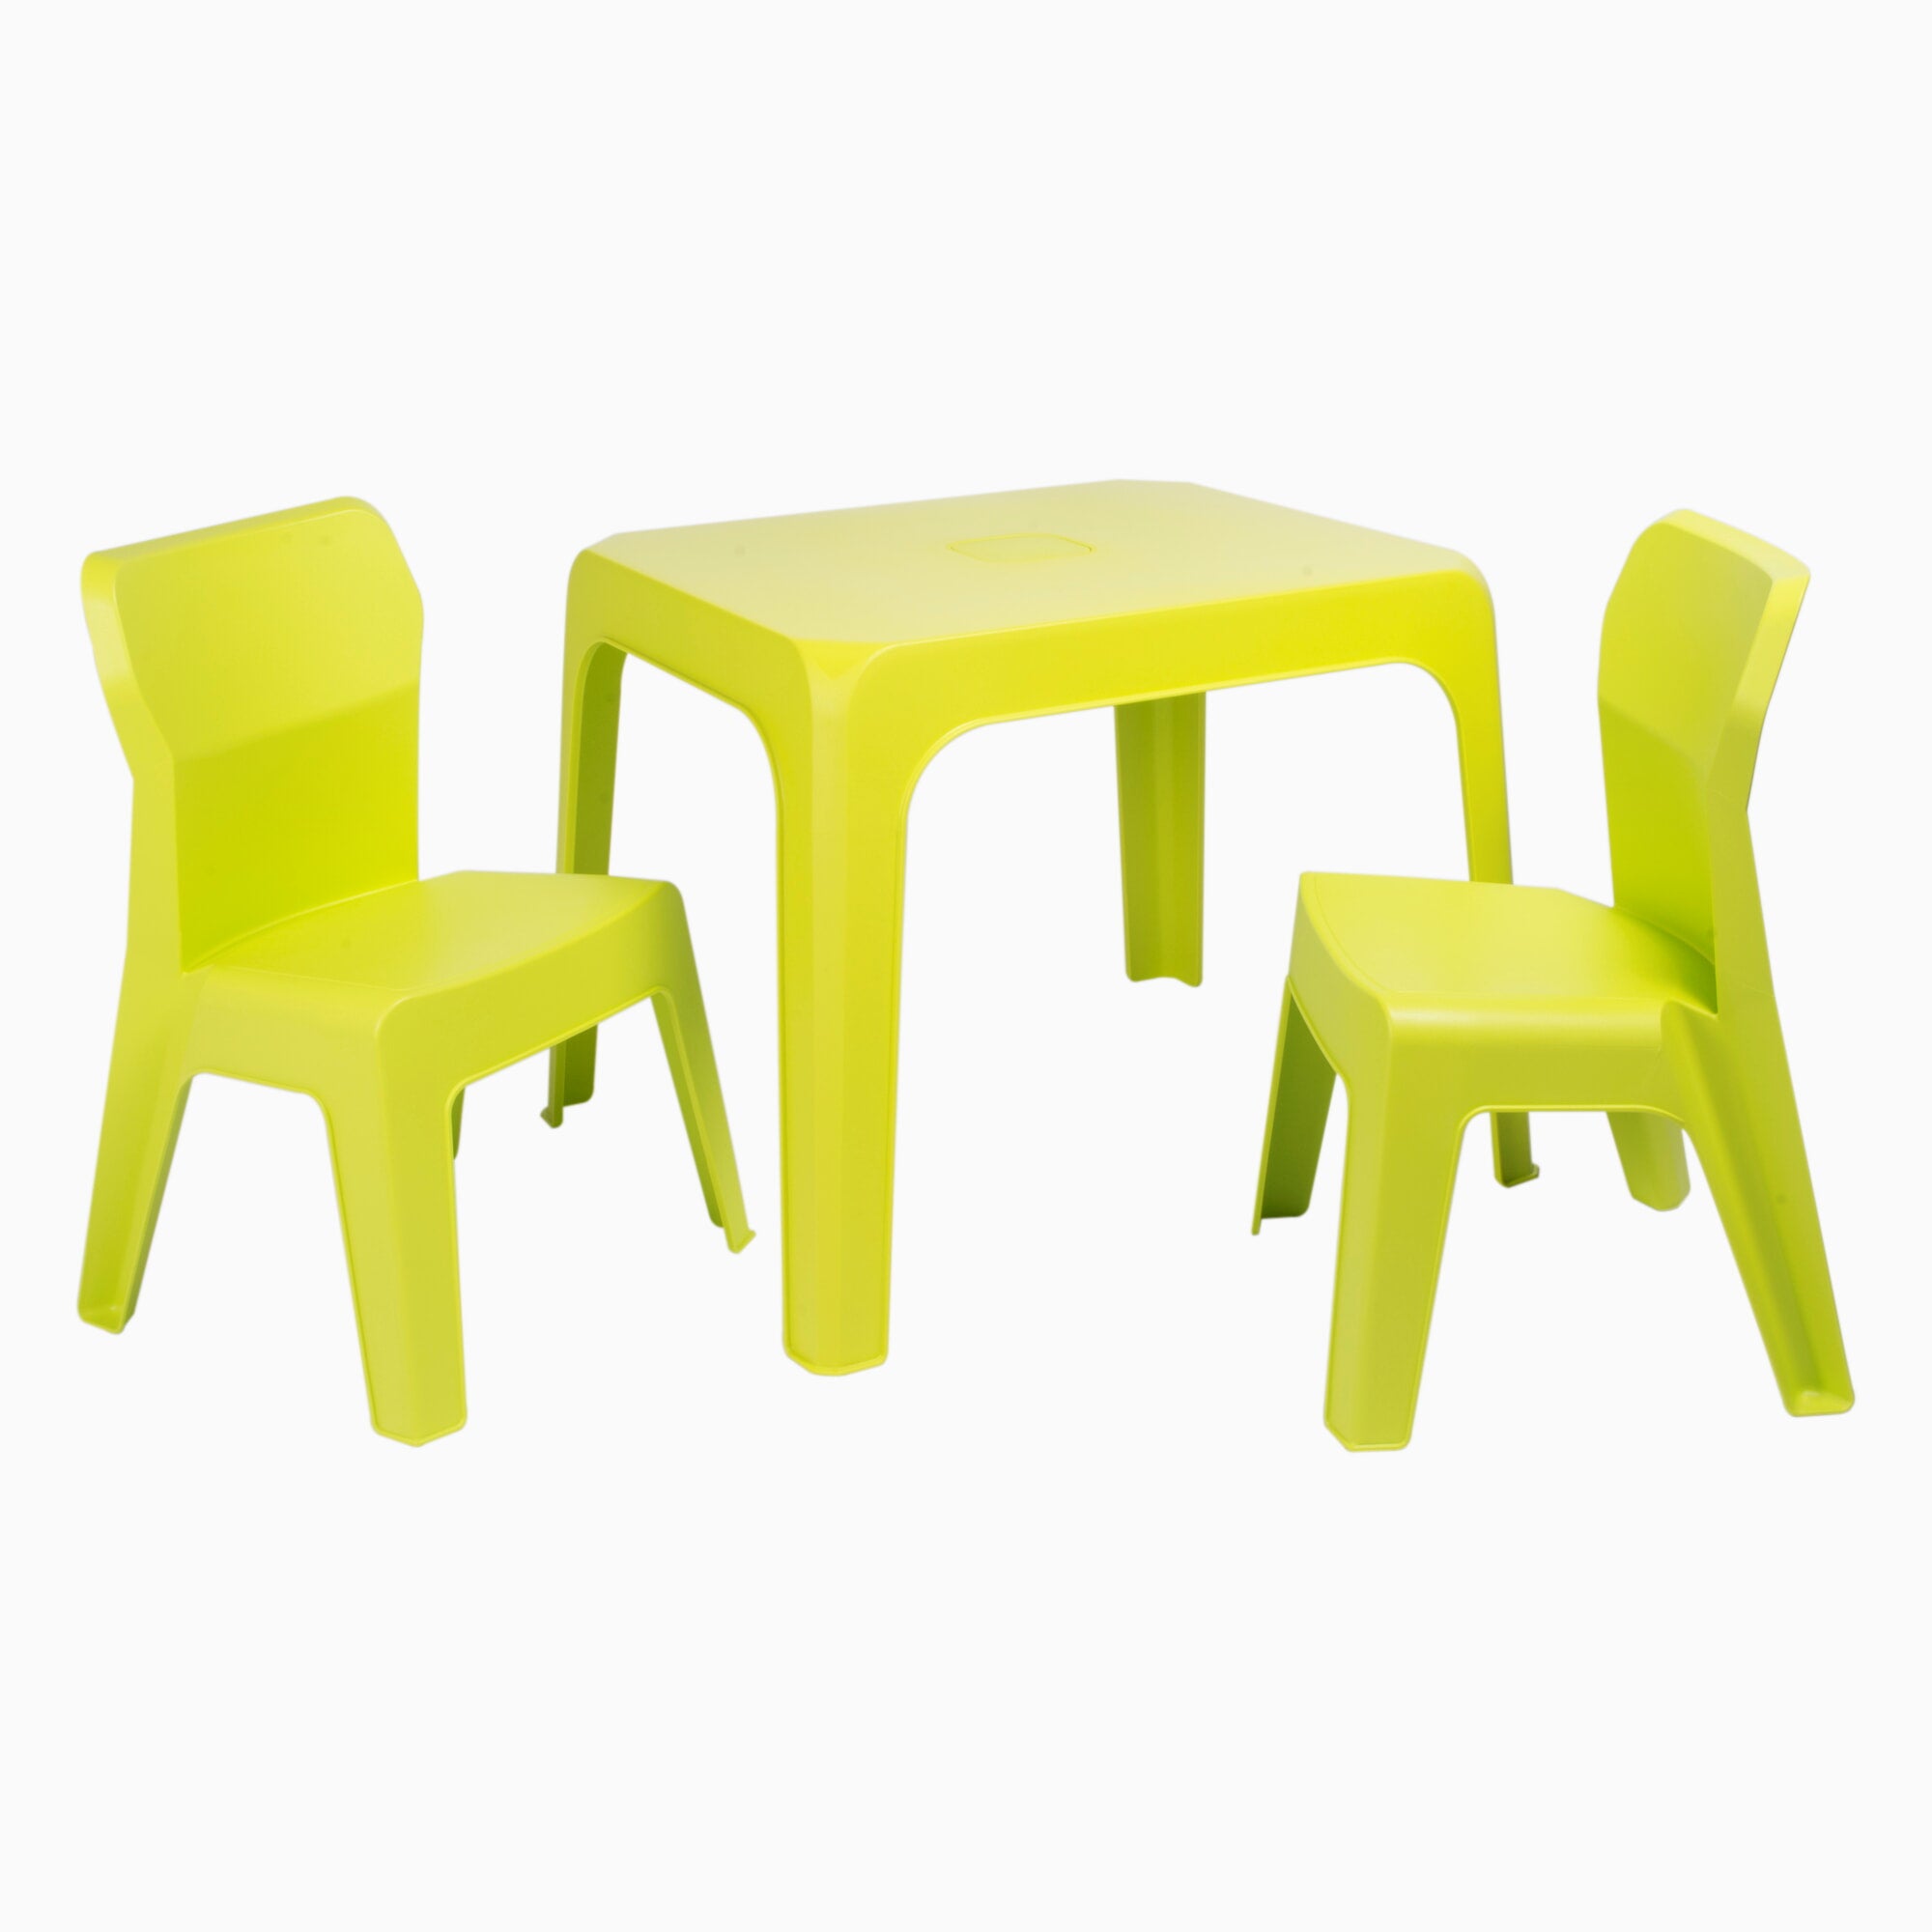 Garbar kinderstoel en tafel set 2+1 groen lime